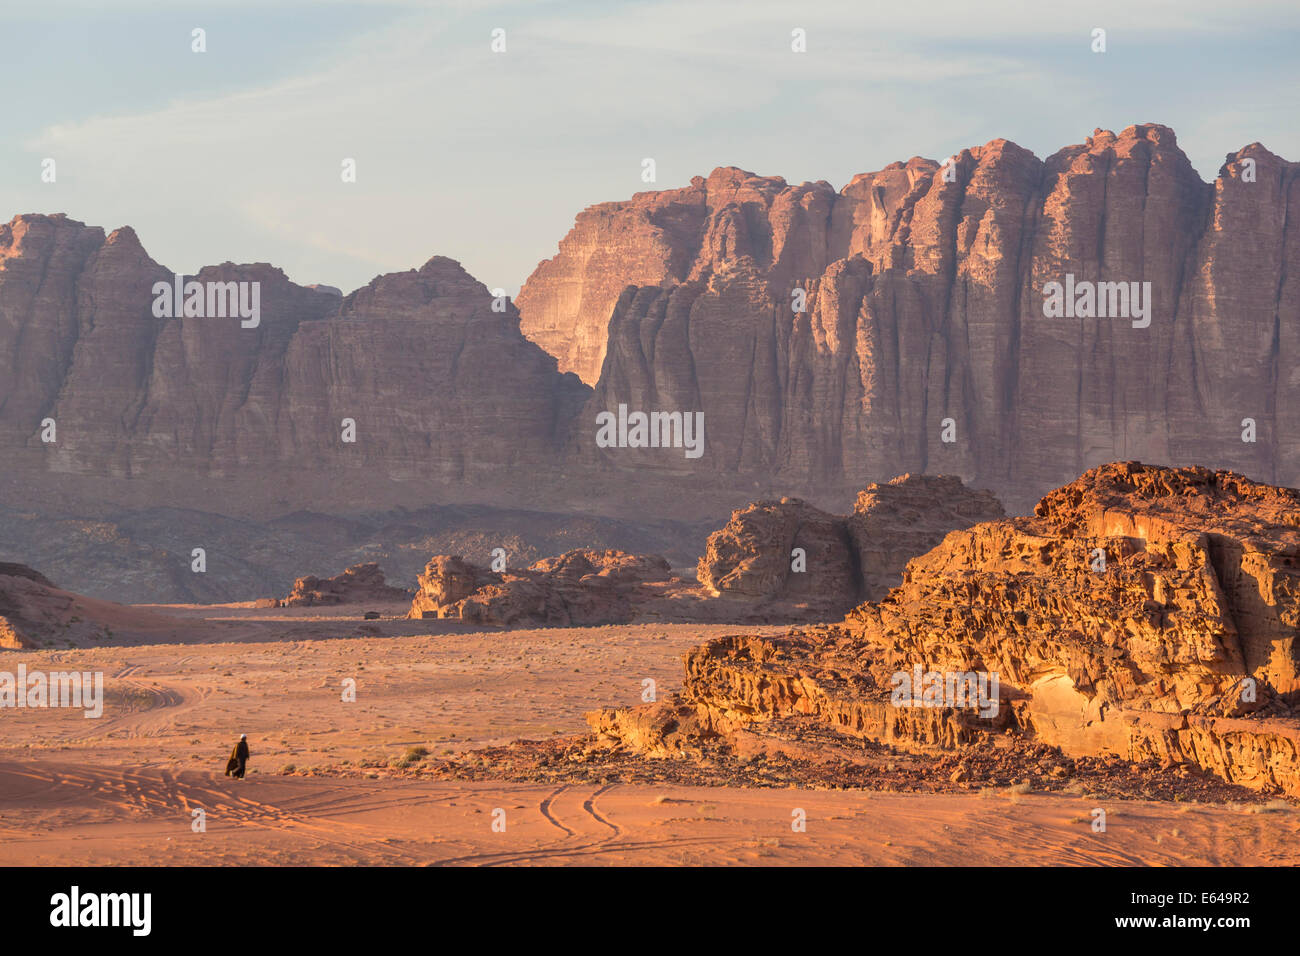 Los beduinos hombre caminando a través del desierto, Wadi Rum, Jordania Foto de stock